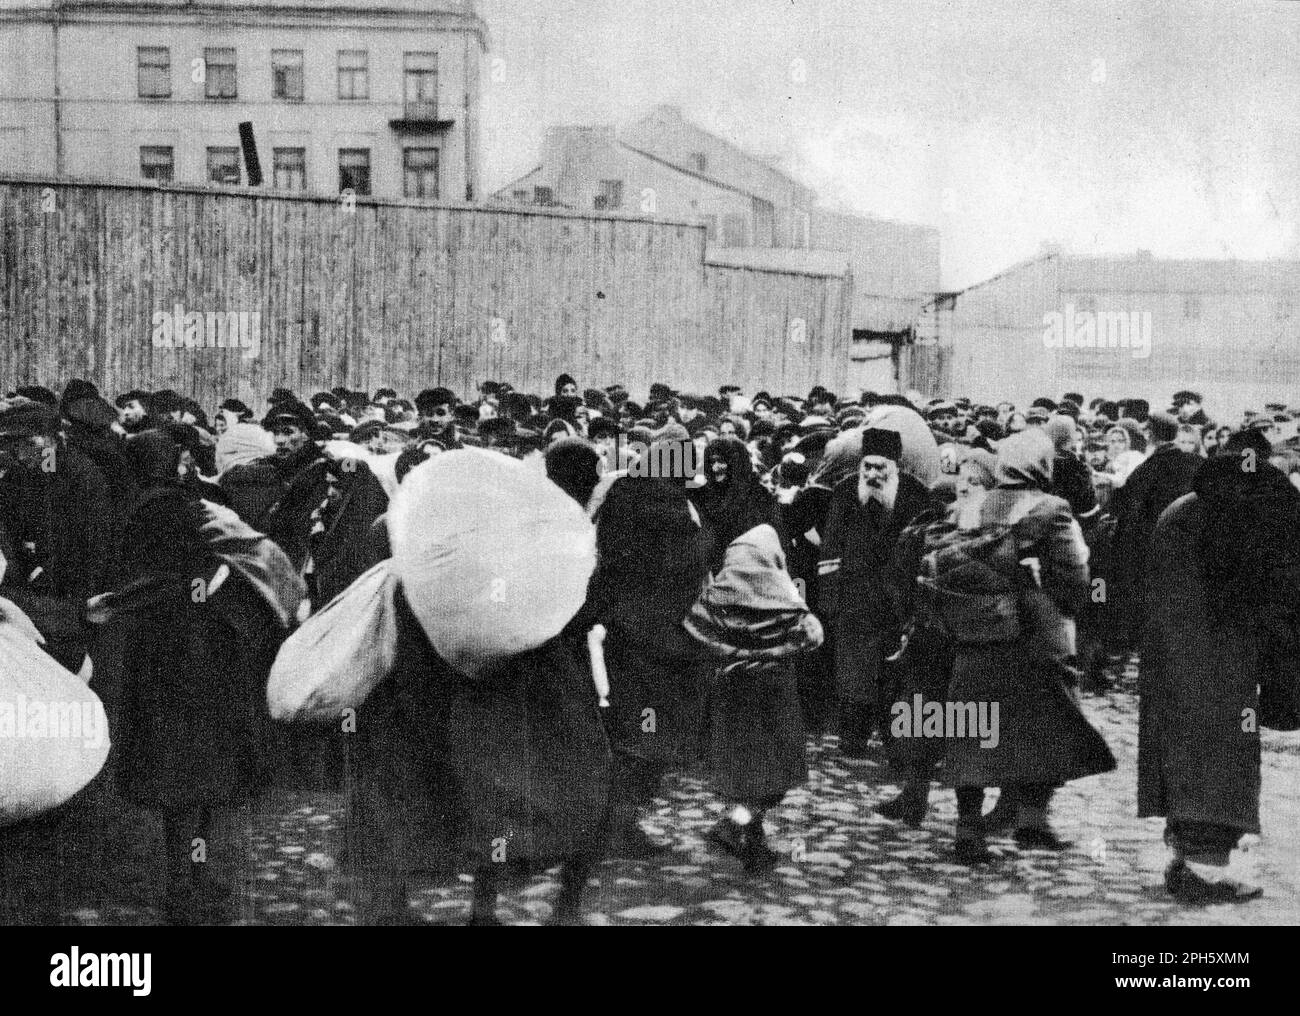 Déportation des Juifs à Bełżec de Zamość, avril 1942. Belzec était un centre d'extermination construit pour tuer les Juifs de Lublin et de Lwow. Environ 450 000 personnes y ont été tuées avant d'être fermées et éradiquées en 1943. Très peu de photos existent car son opération était secrète et elle a fermé avant que les alliés ne viennent donc il n'y a pas d'images de post-libération comme nous le voyons de Dachau et Auschwitz. Seulement 7 personnes ont survécu à Belzec. Banque D'Images